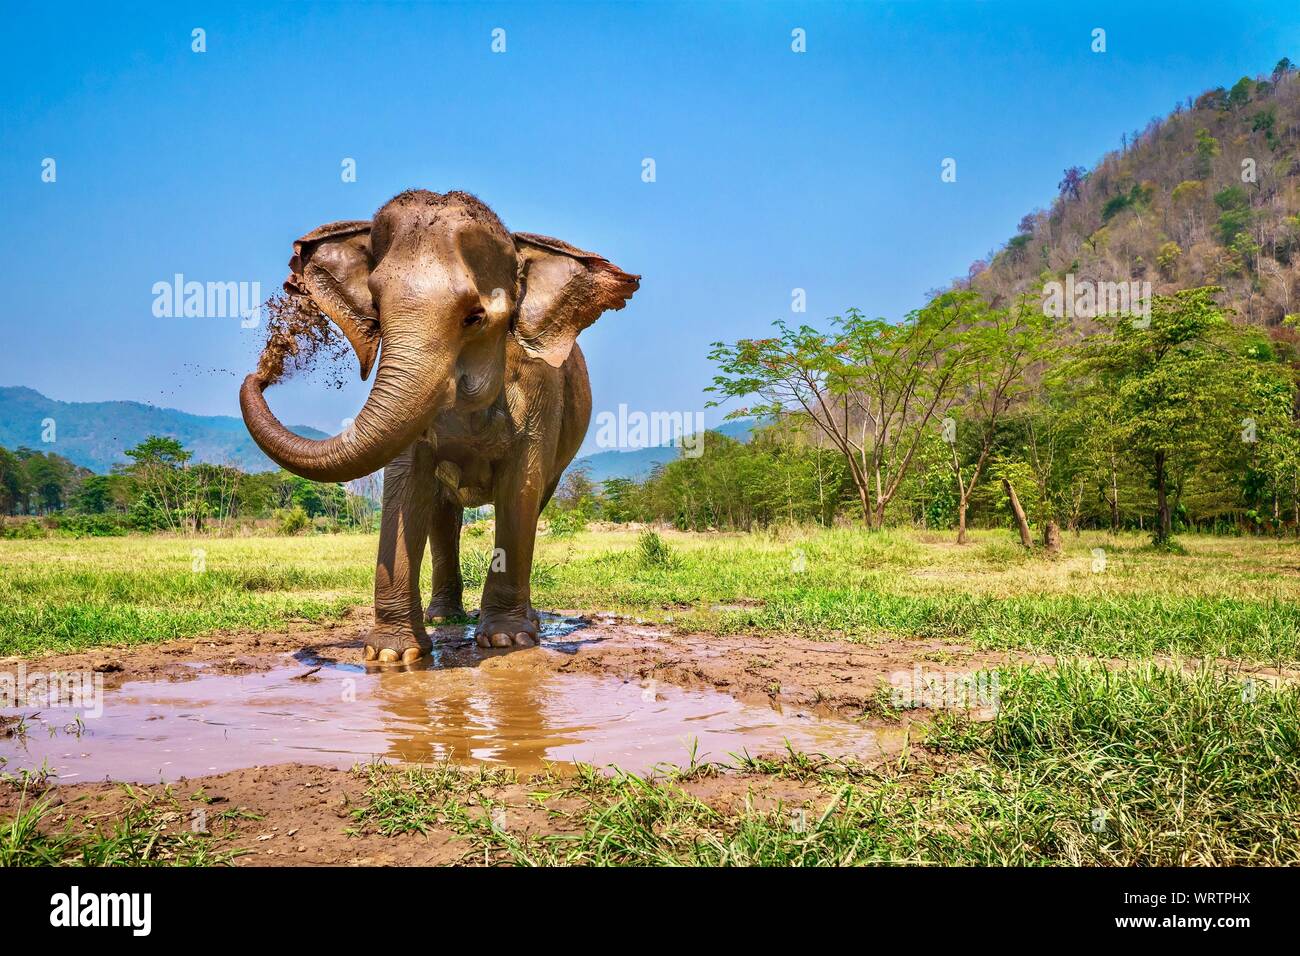 Ein erwachsenes Weibchen Asiatischer Elefant steht am Rande einer schlammigen Pool, mit ihrem Koffer eine Schicht Schlamm ihrer Haut zu sprühen. Chiang Mai, Thailand. Stockfoto